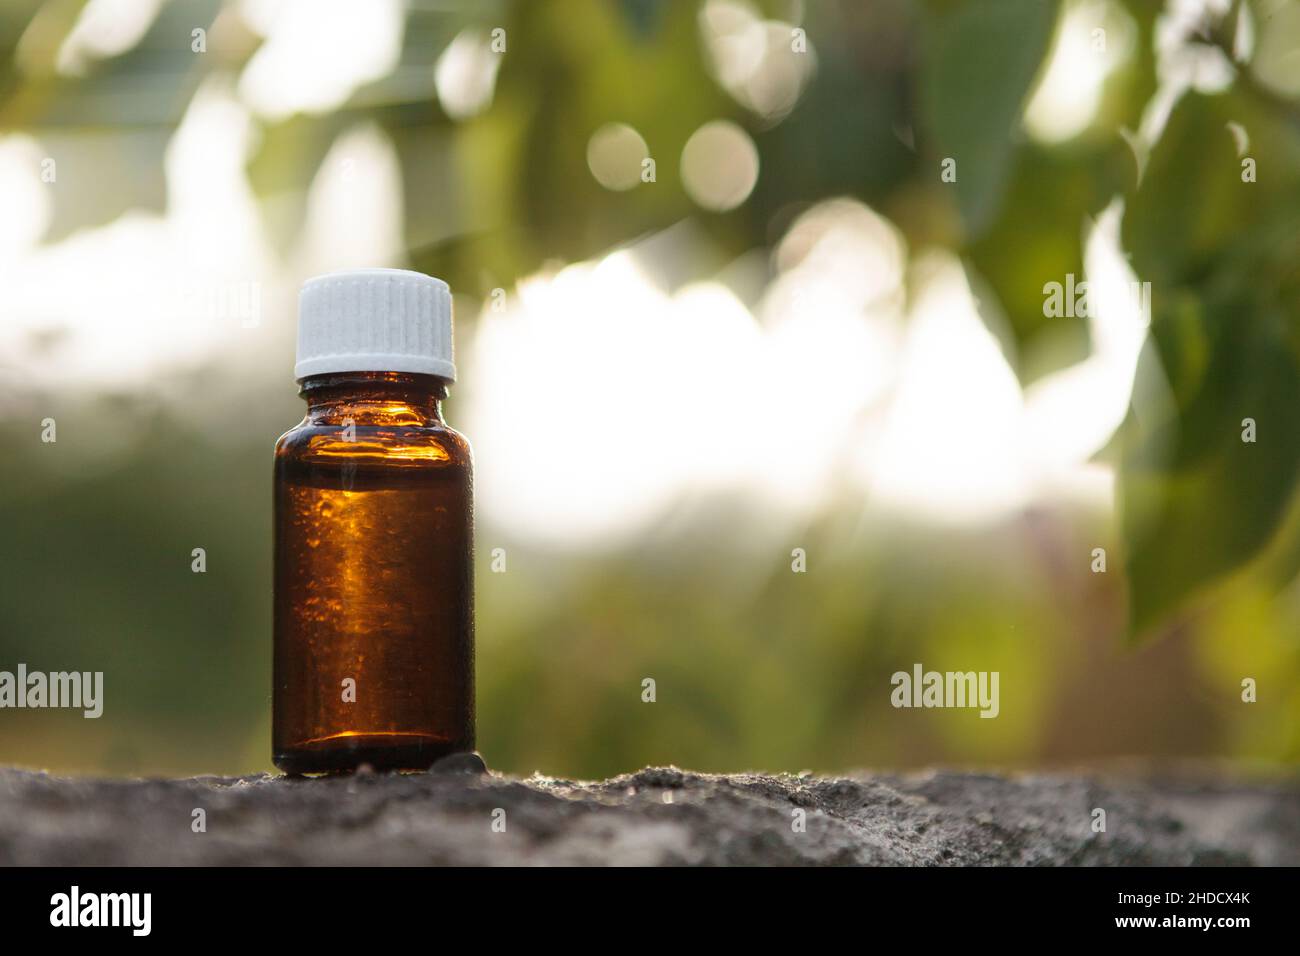 Kleine medizinische Flasche vor dem Hintergrund von grünen Blättern und Lichtstrahlen. Natürliche Medizin, Konzept. Stockfoto